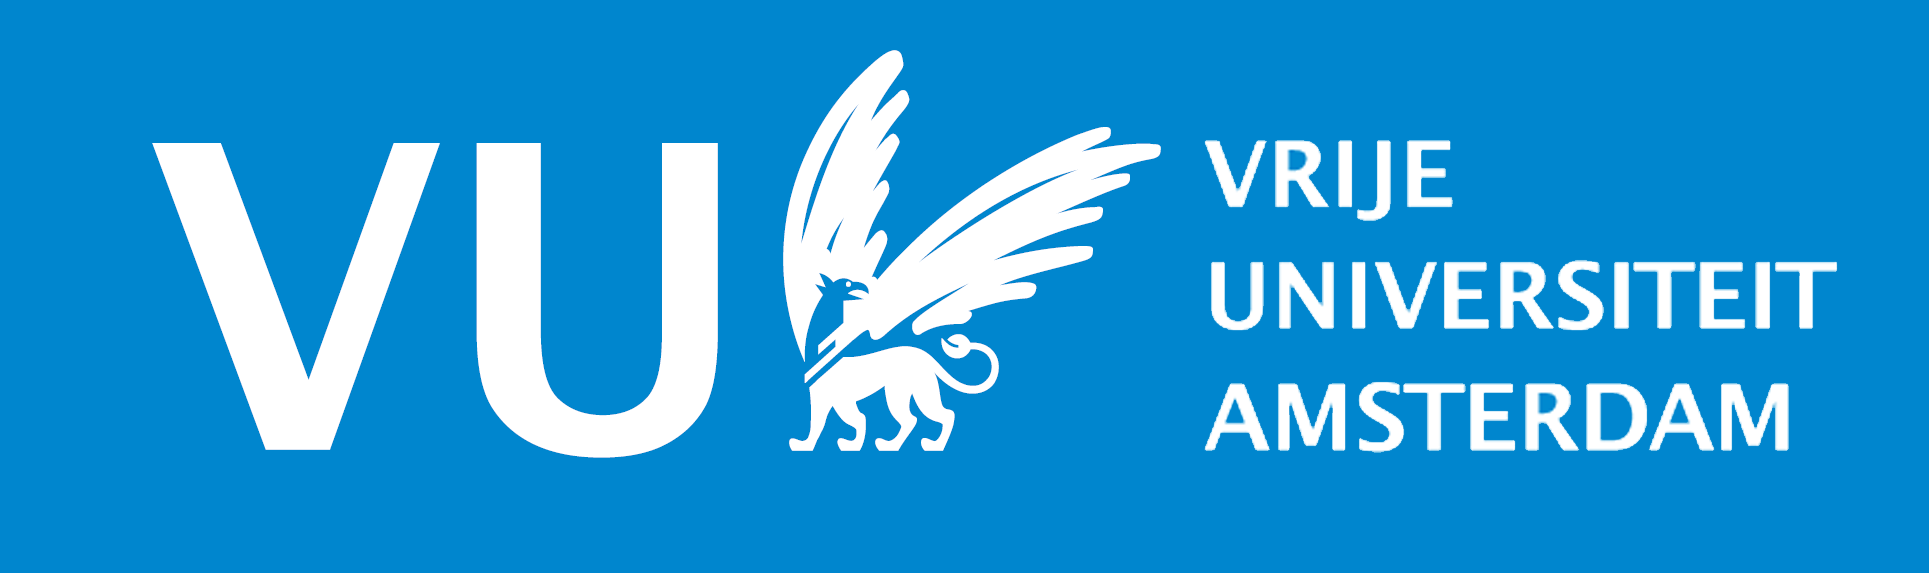 vrije universiteit amsterdam logo 08